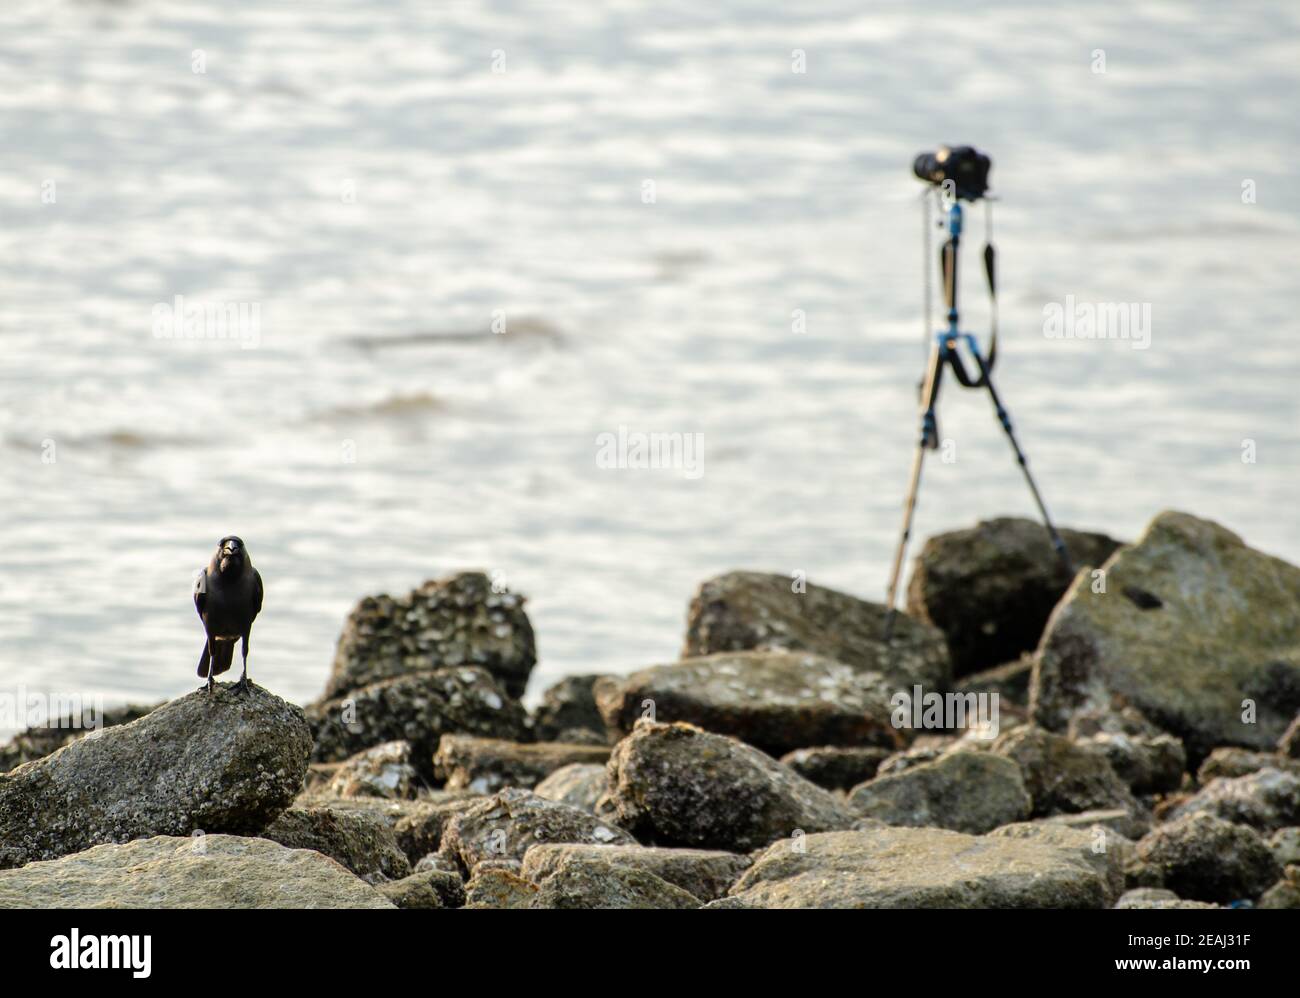 Un stand de corbeau à côté de l'appareil photo sur le rocher près de la côte Banque D'Images